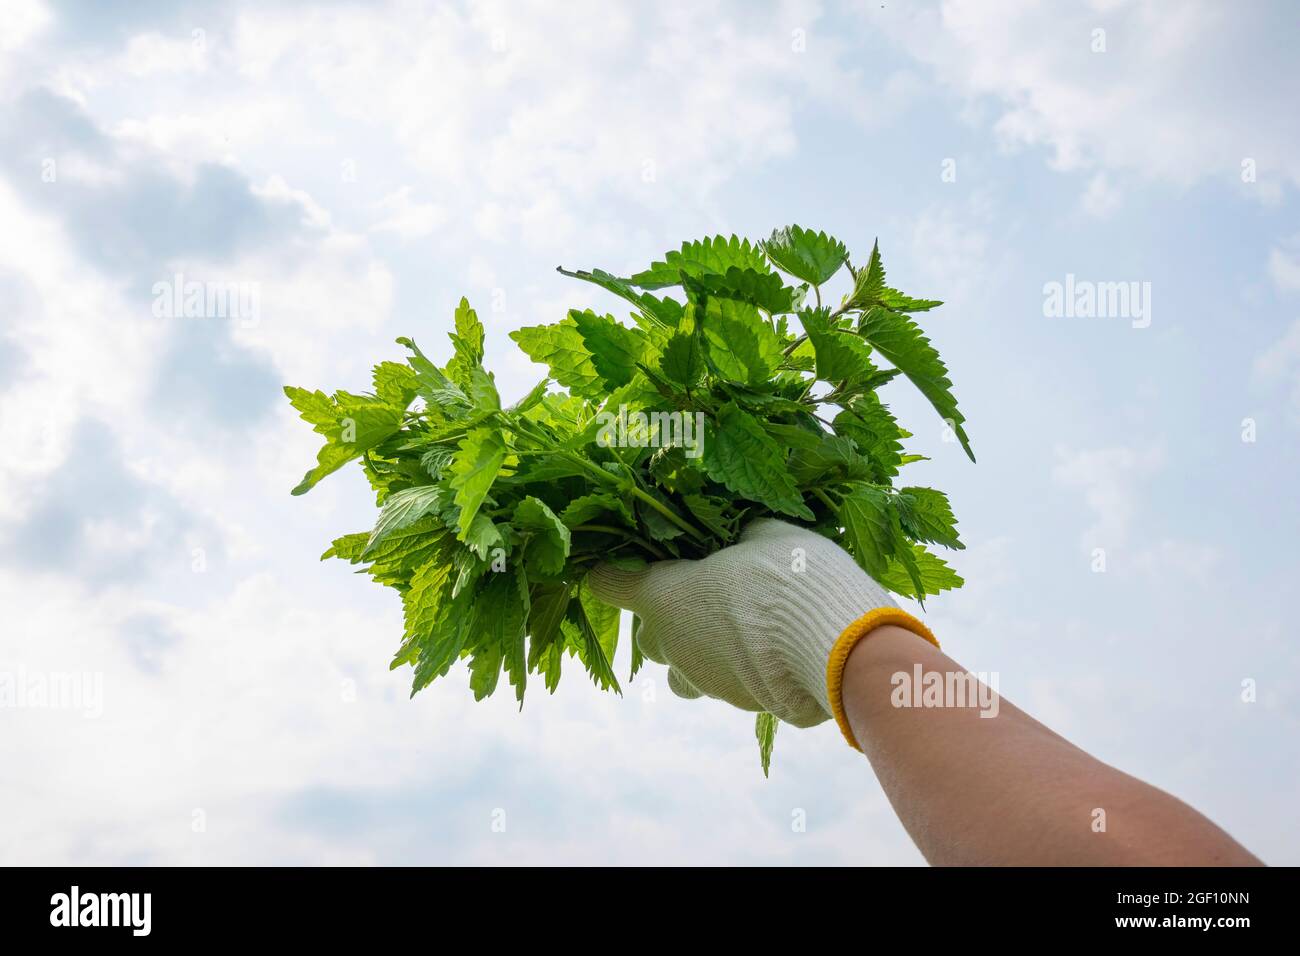 Mazzo di foglie di ortica fresche raccolte in donna mano su sfondo cielo. Cibo sano, superfood, erbe per la salute e la bellezza, cura della pelle Foto Stock